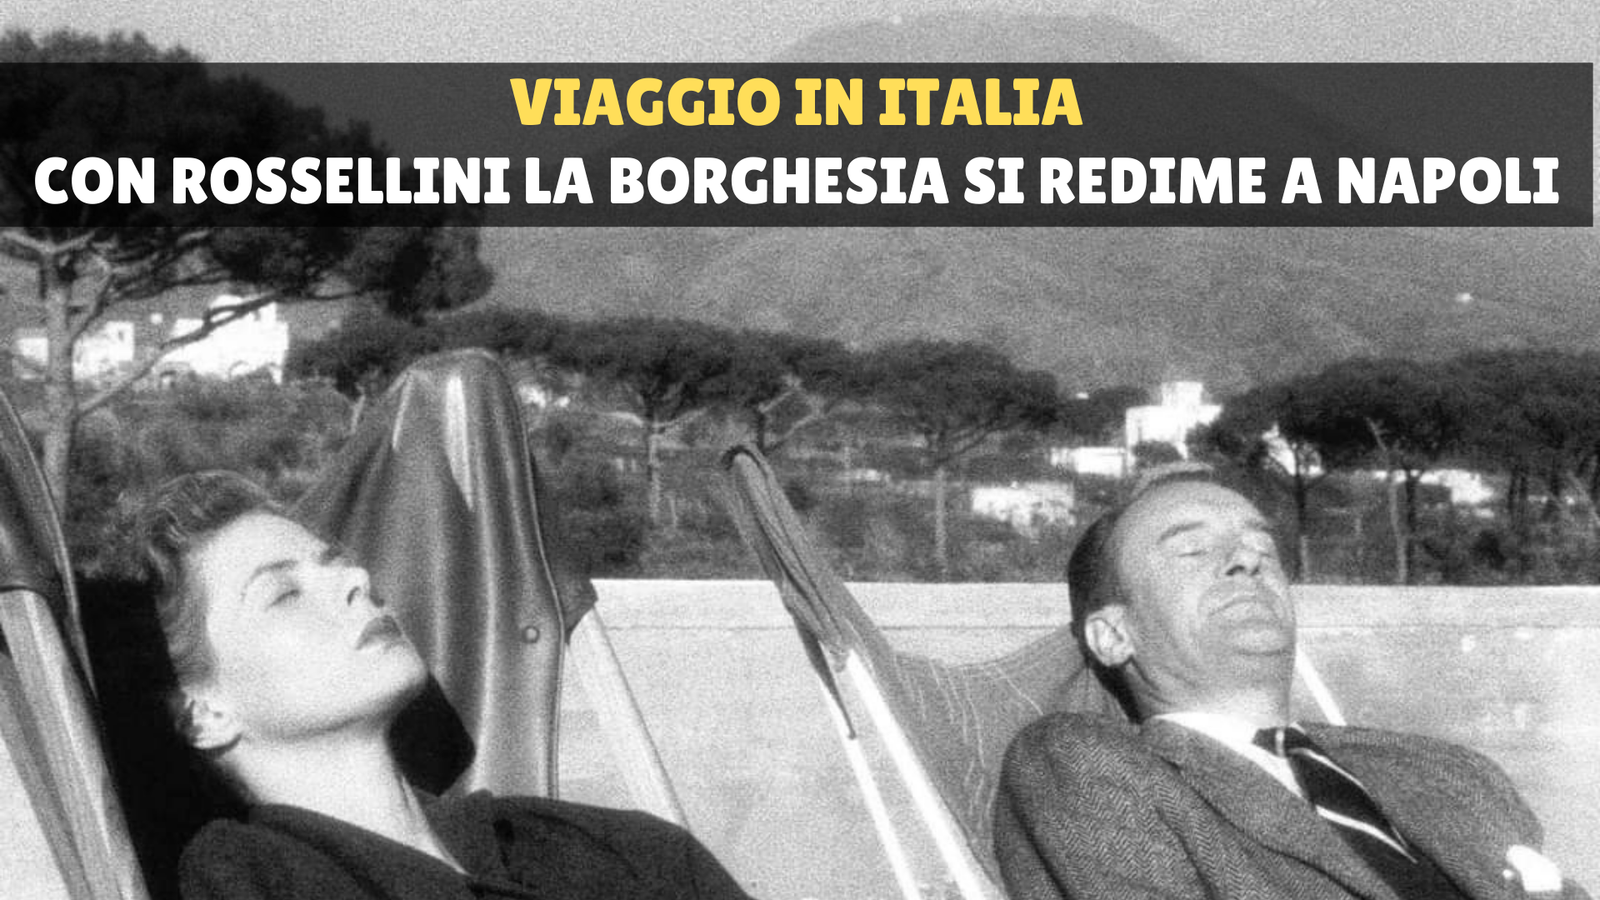 Viaggio in Italia: con Rossellini la borghesia si redime a Napoli